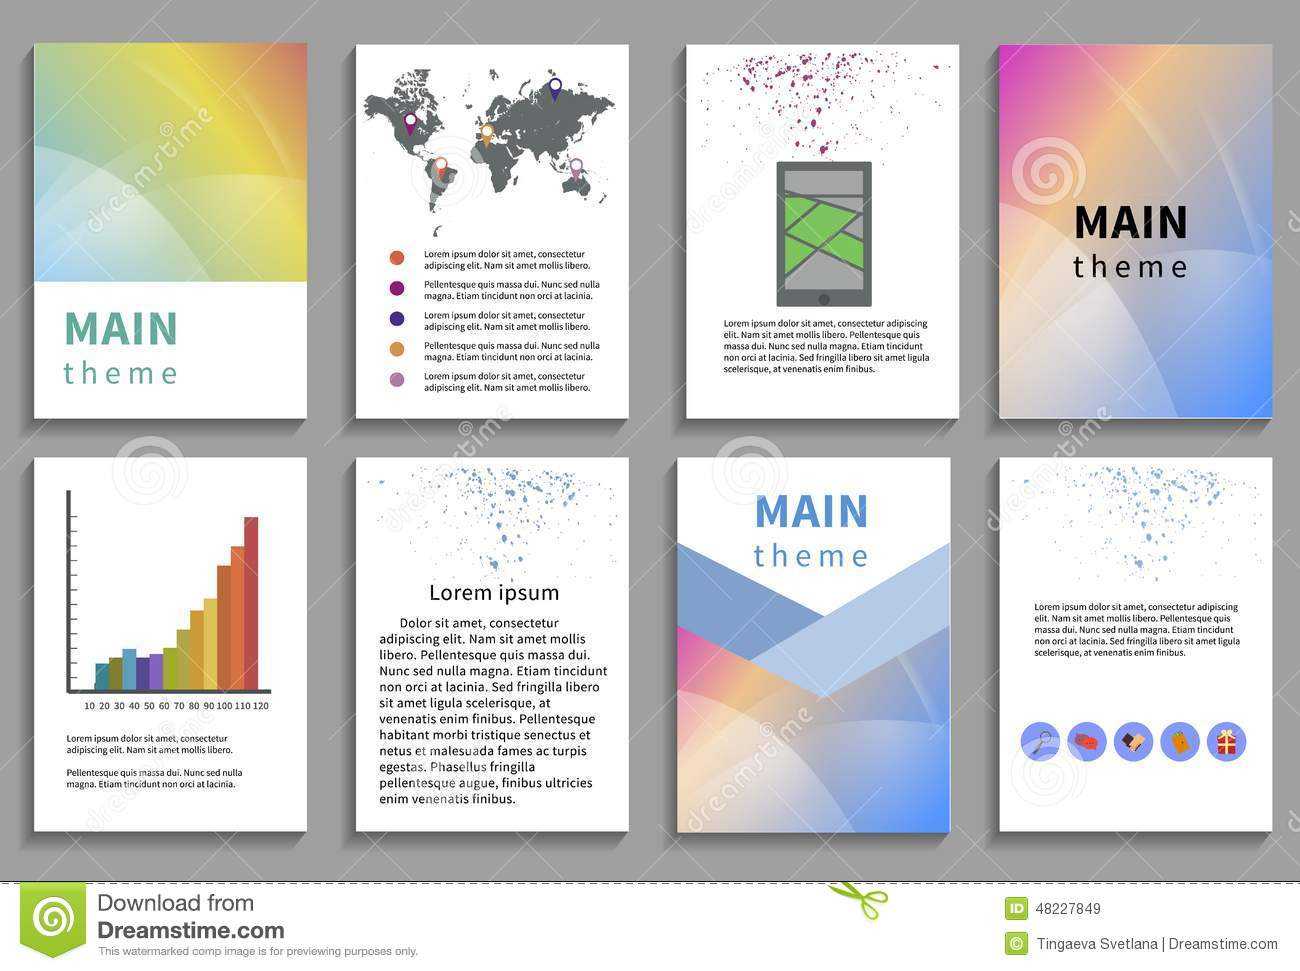 Online Brochure Design Free Download – Veppe Regarding Online Brochure Template Free